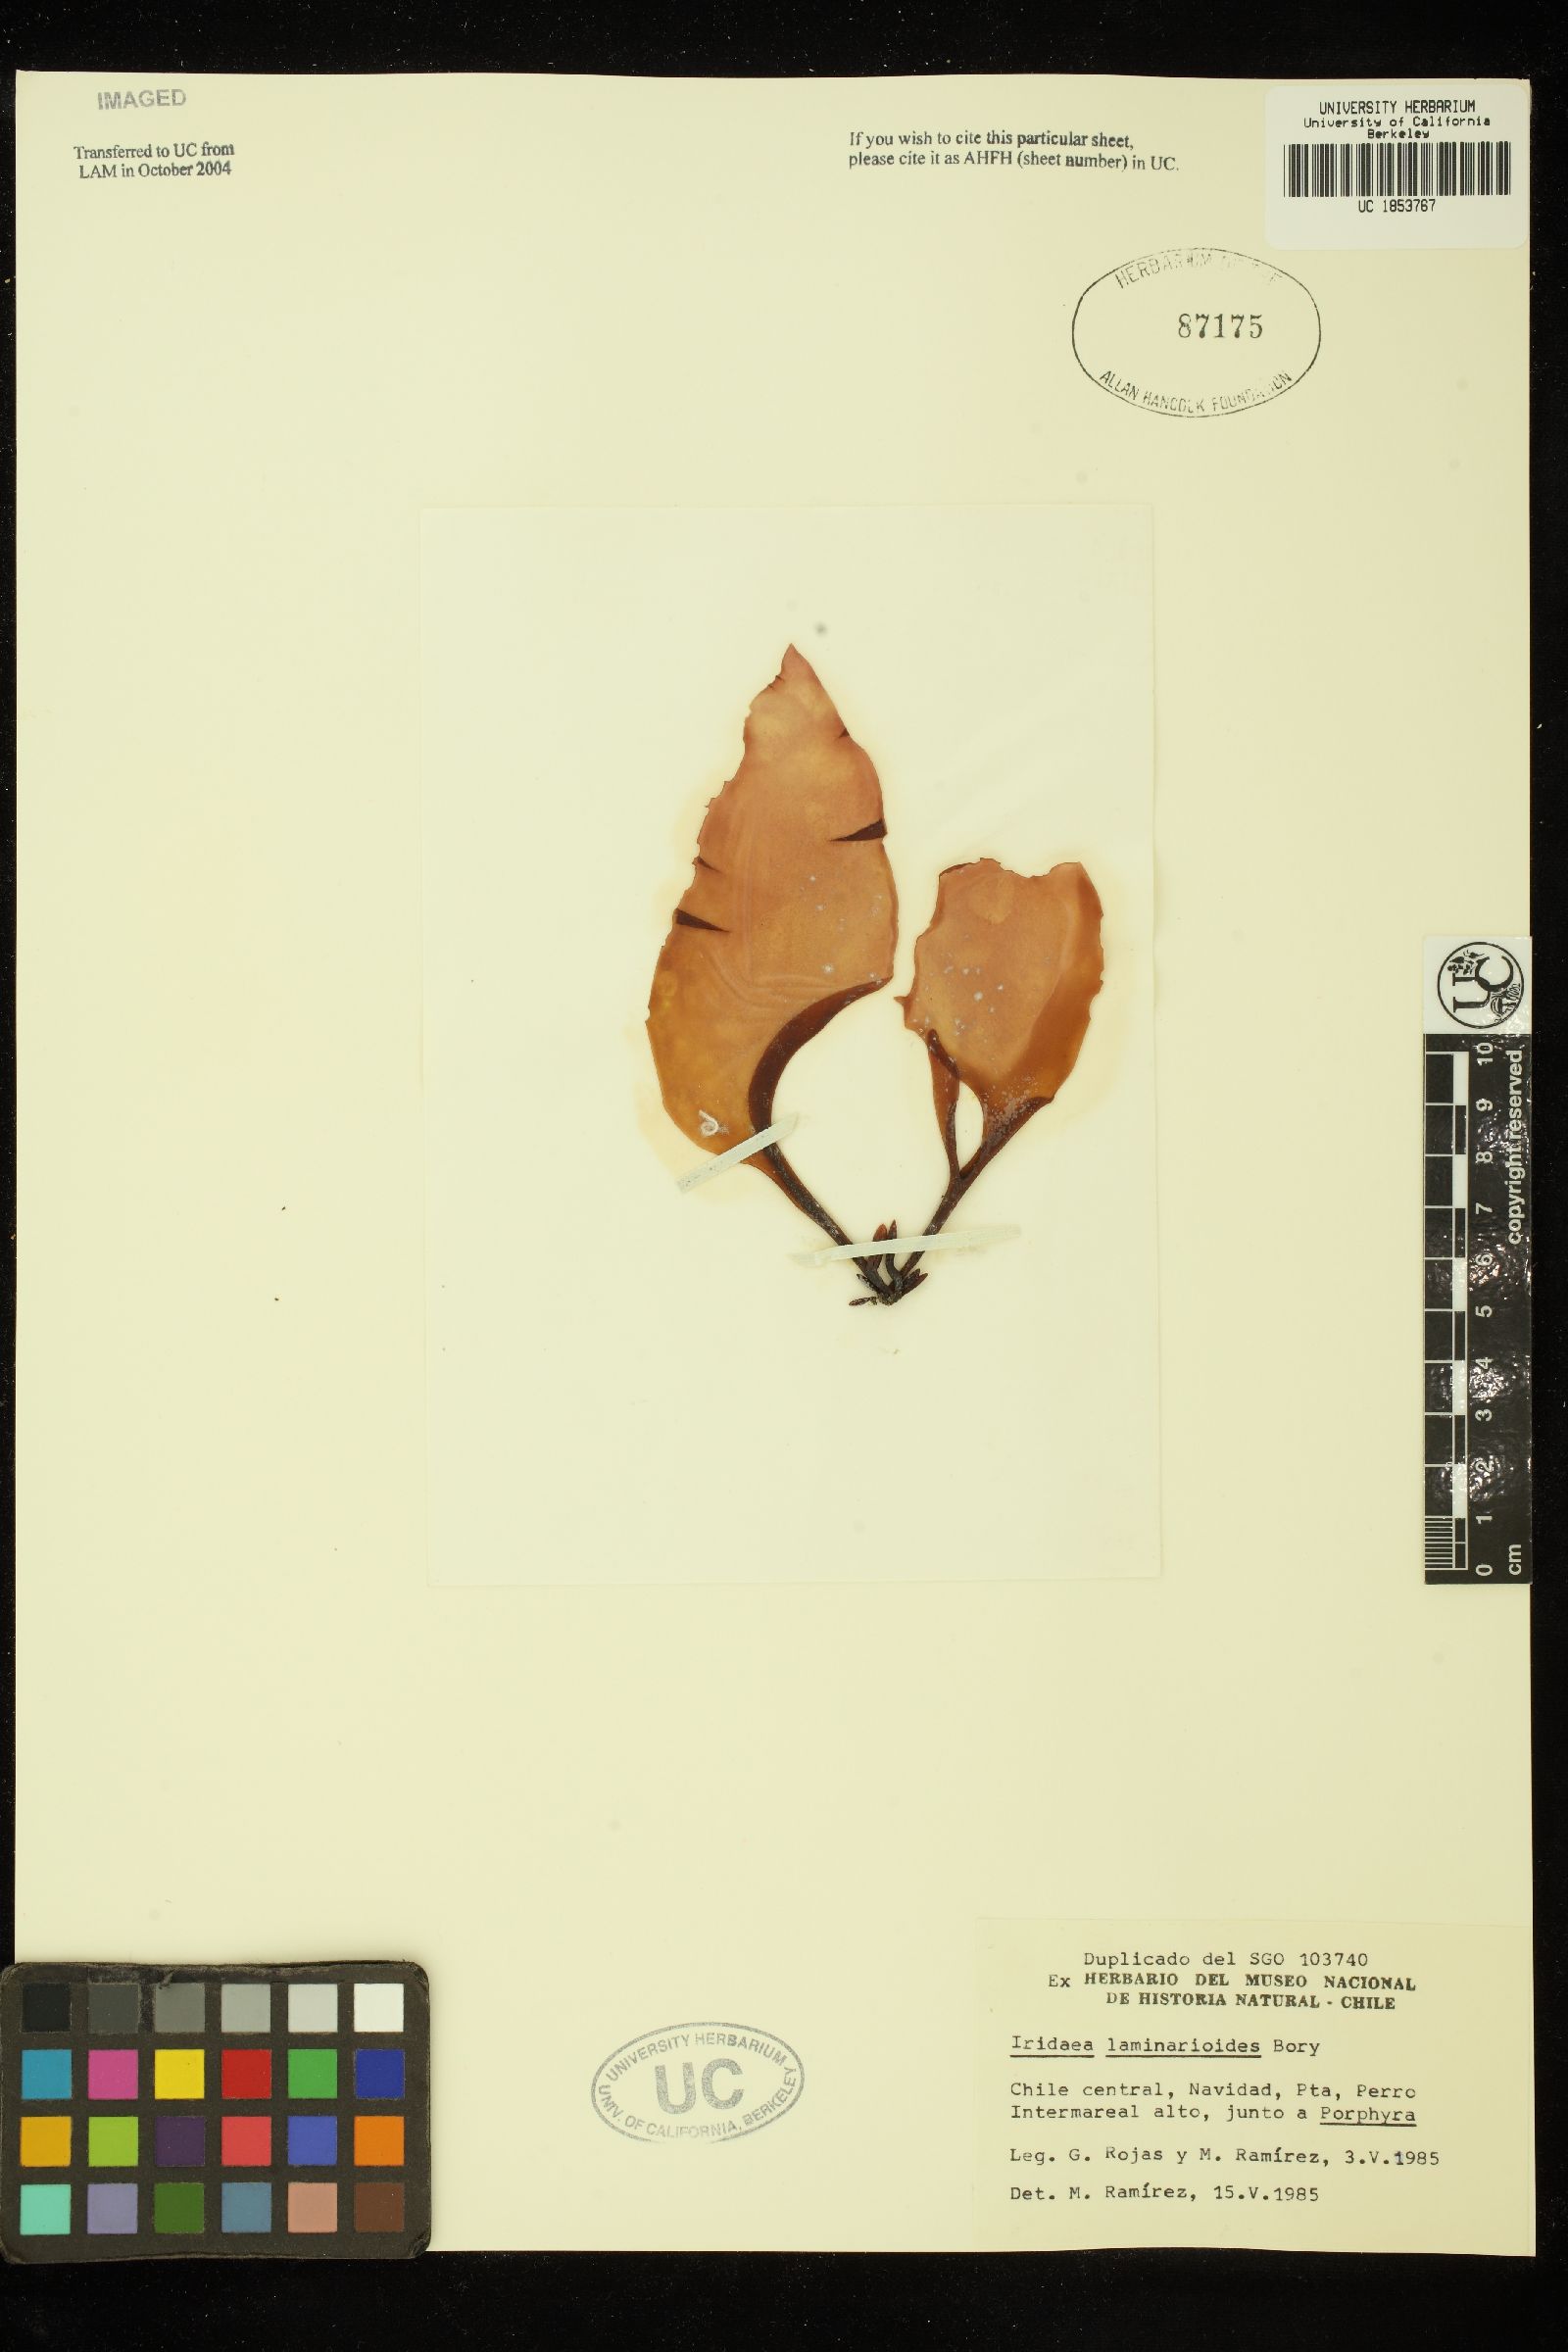 Mazzaella japonica image